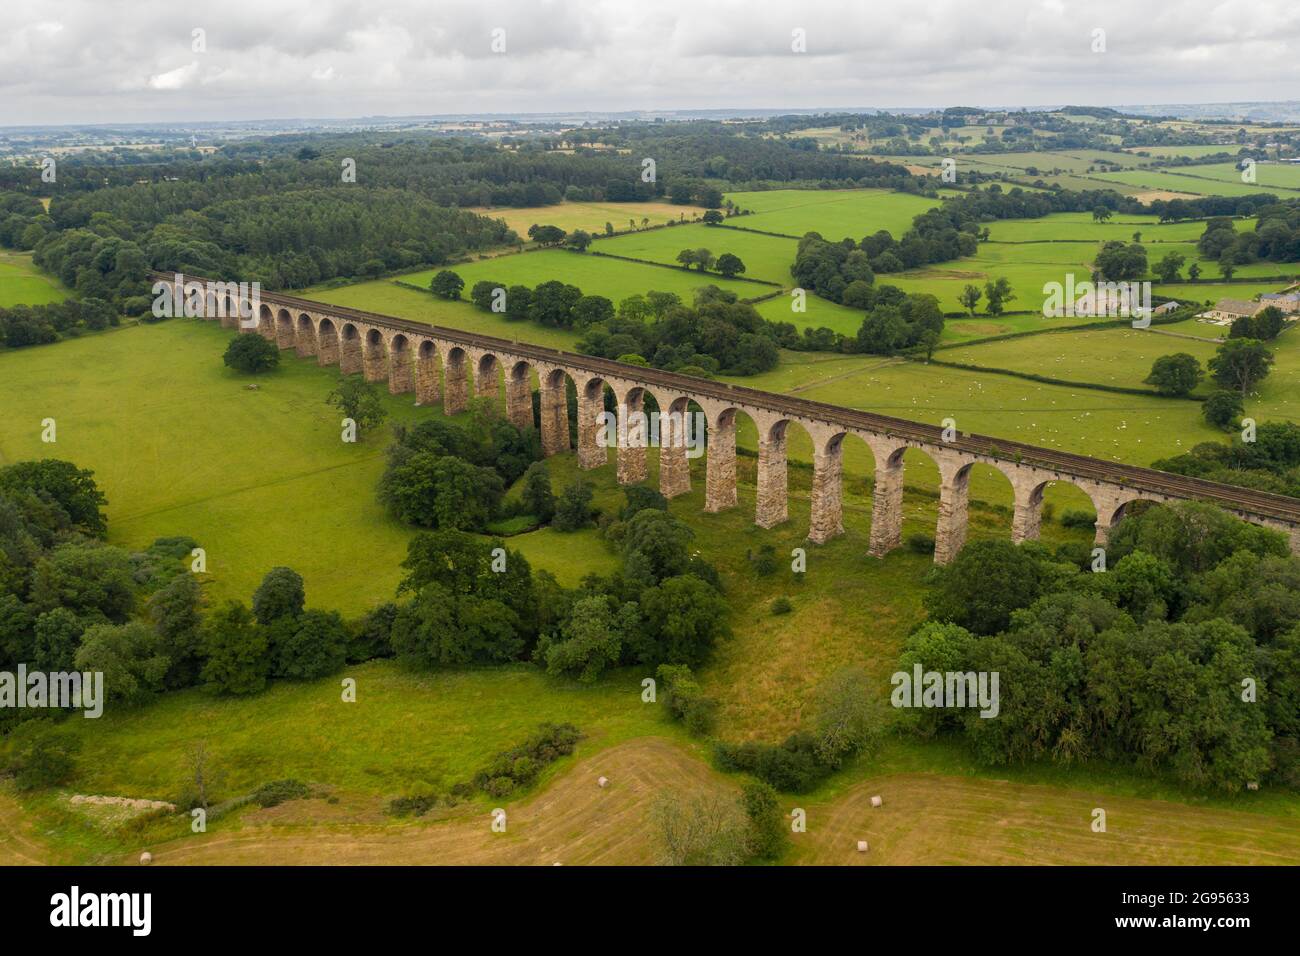 Vista aérea del paisaje del viaducto ferroviario del Valle de la Carmesí en Harrogate, Reino Unido Foto de stock